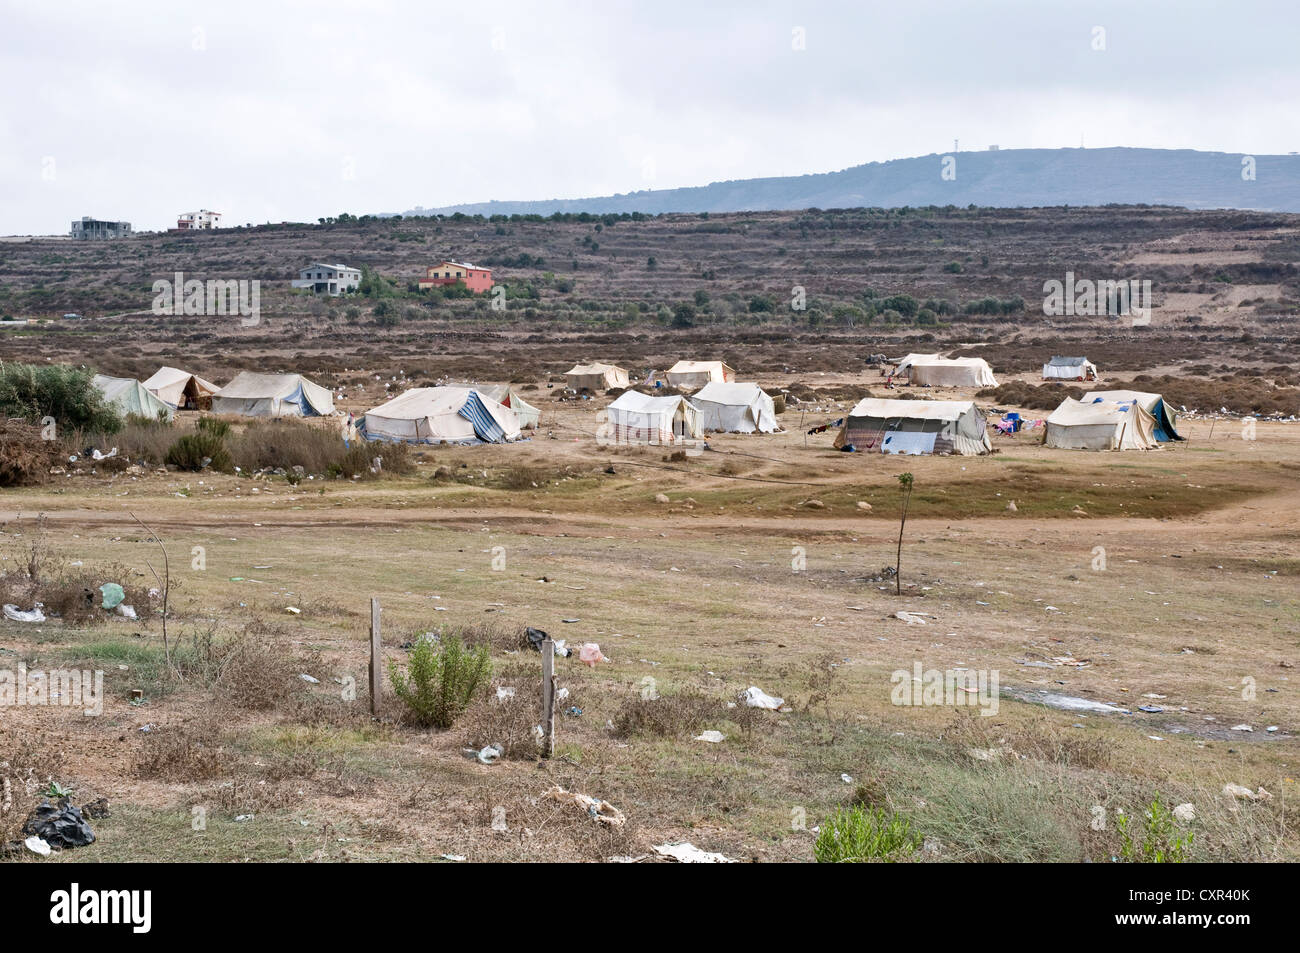 Un campamento de refugiados de campaña para migrantes sirios en la región libanesa septentrional de Wadi Khaled, justo al sur de la frontera entre Siria y el Líbano. Foto de stock